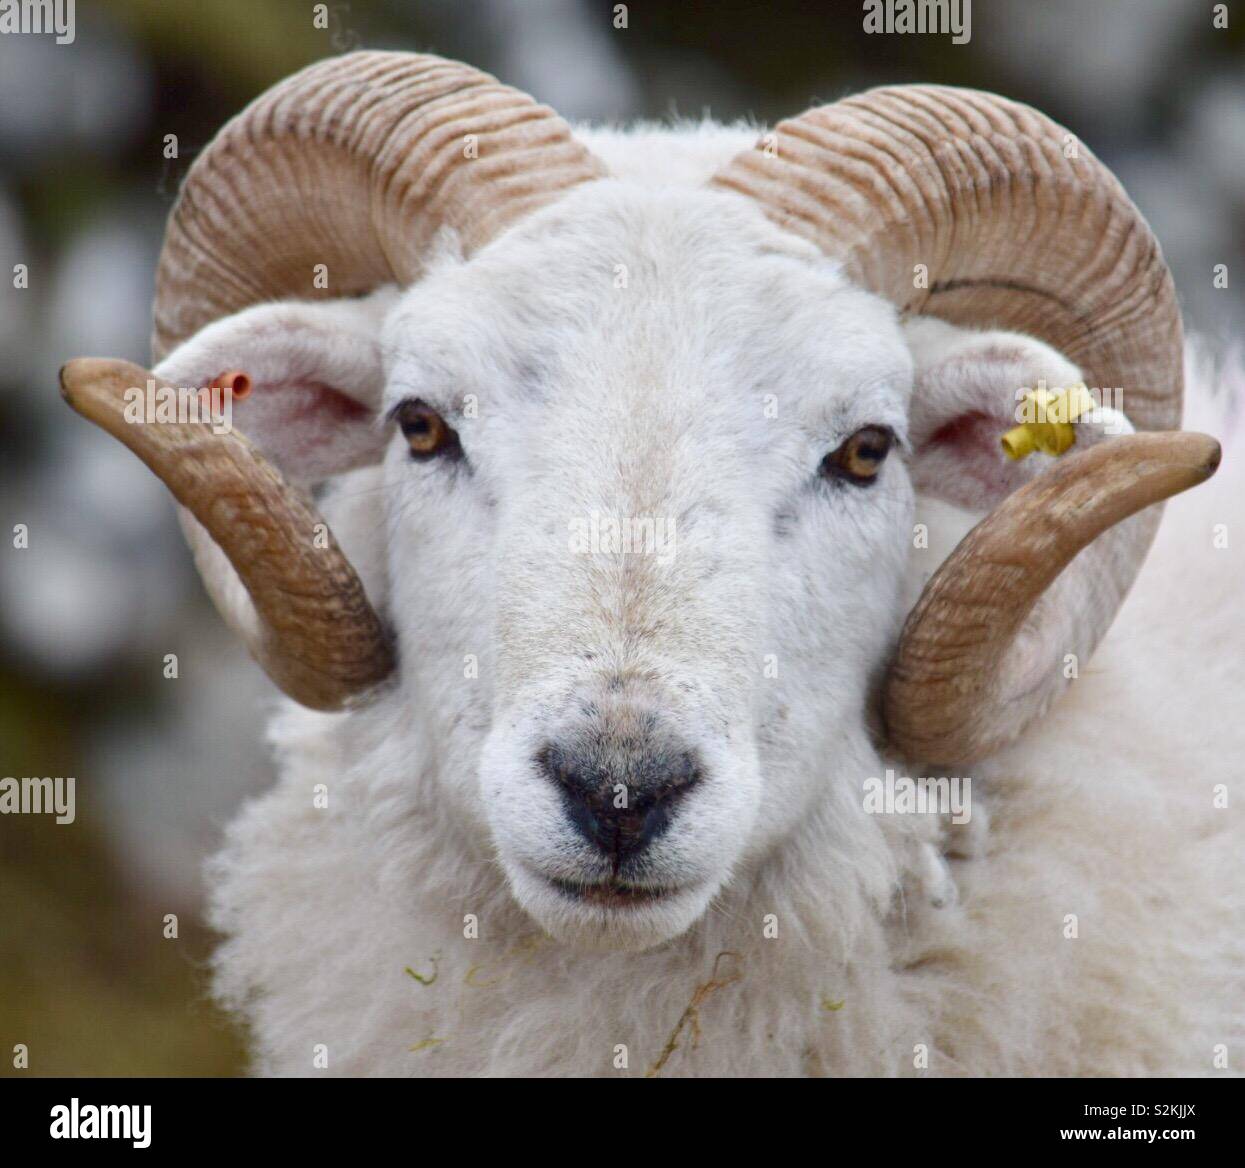 Scottish curly horned sheep, Isle of Harris Stock Photo